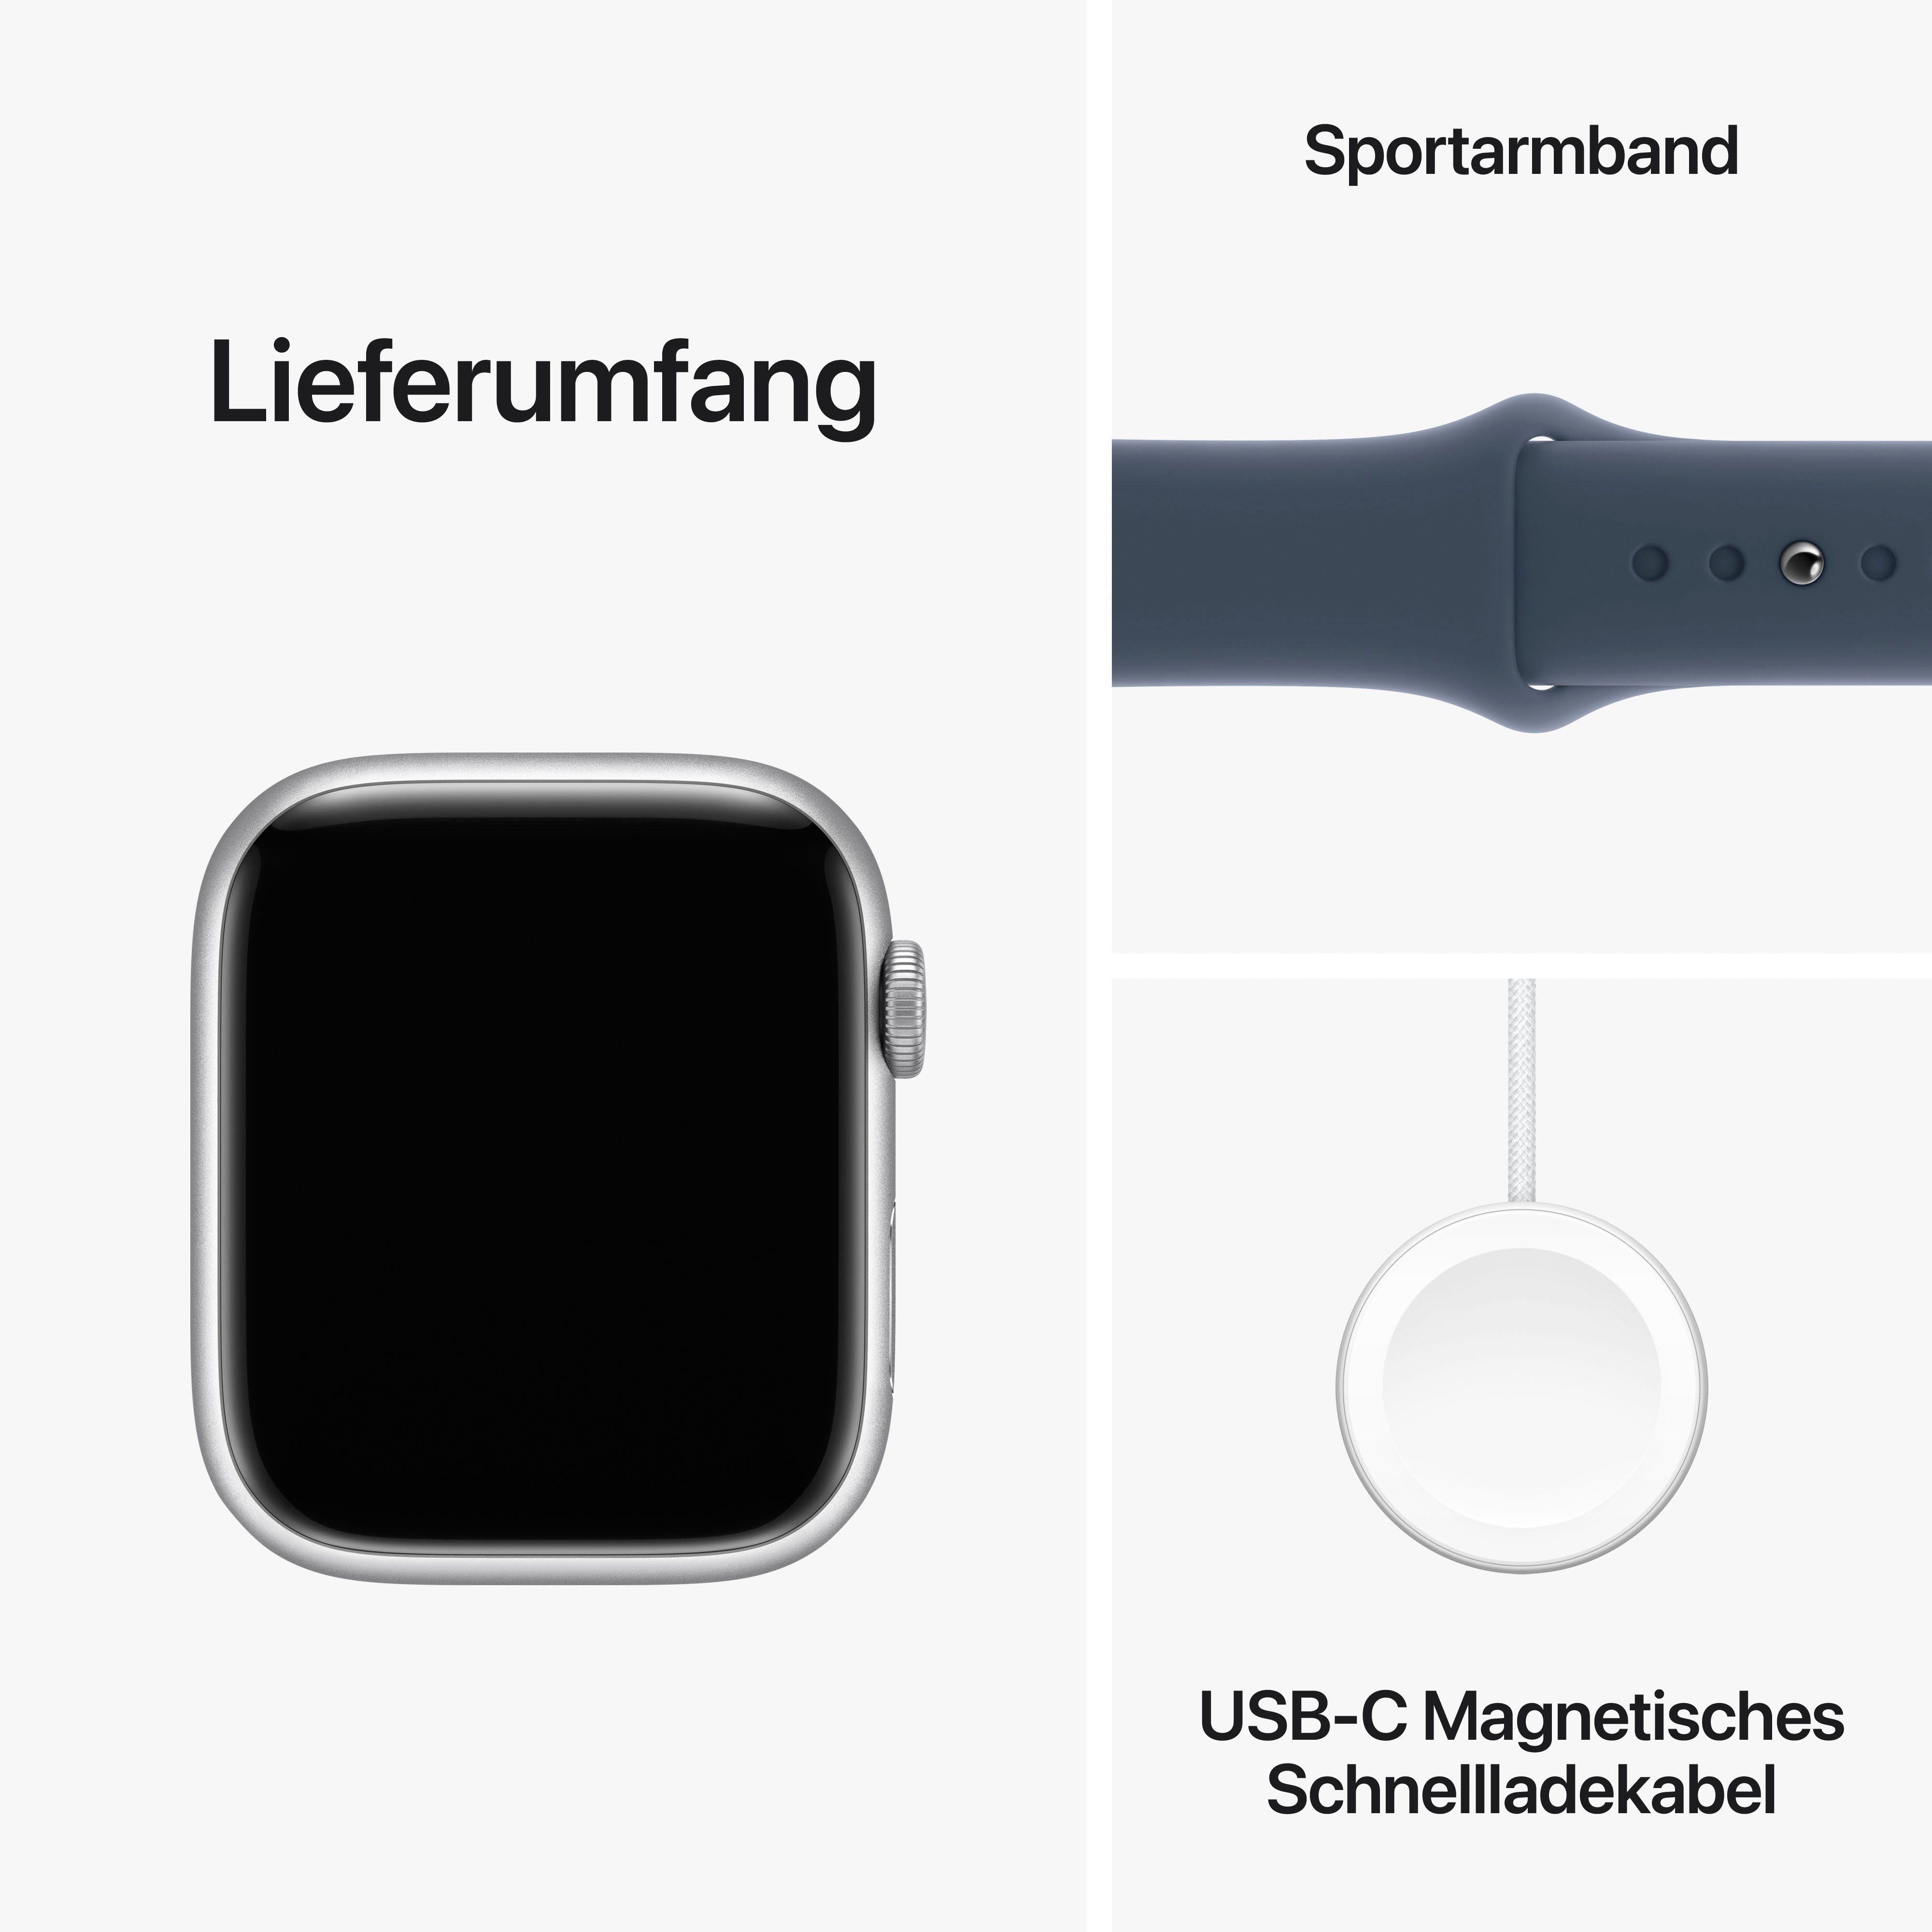 Apple Watch Silber | Watch Zoll, Band + 45mm GPS 10), (4,5 Series Cellular cm/1,77 9 Sport Sturmblau Smartwatch Aluminium OS